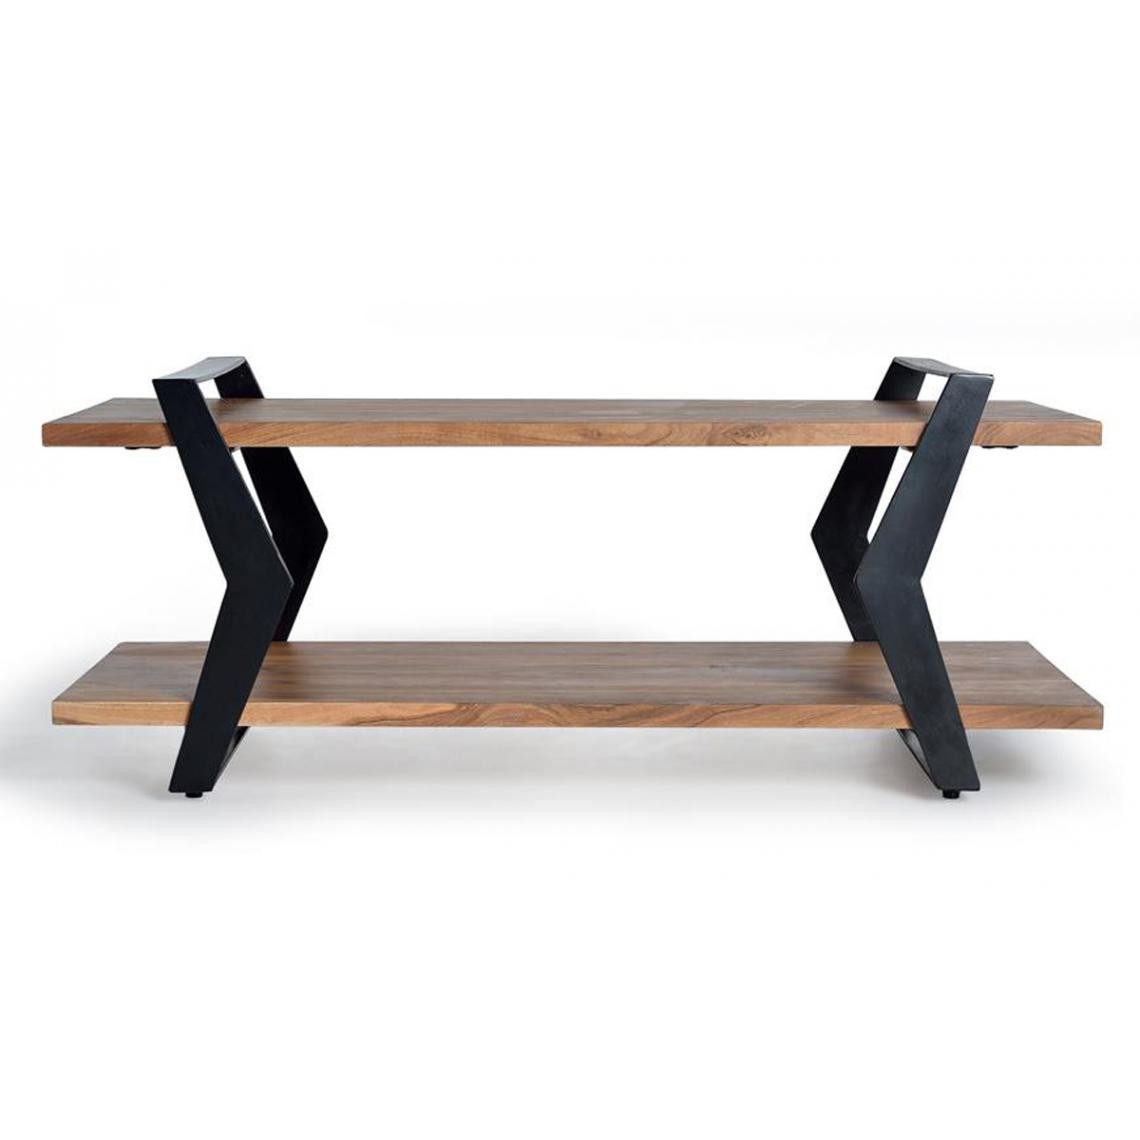 Pegane - Table basse en bois d'acacia coloris naturel - longueur 115 x profondeur 60 x hauteur 47 cm - Tables basses